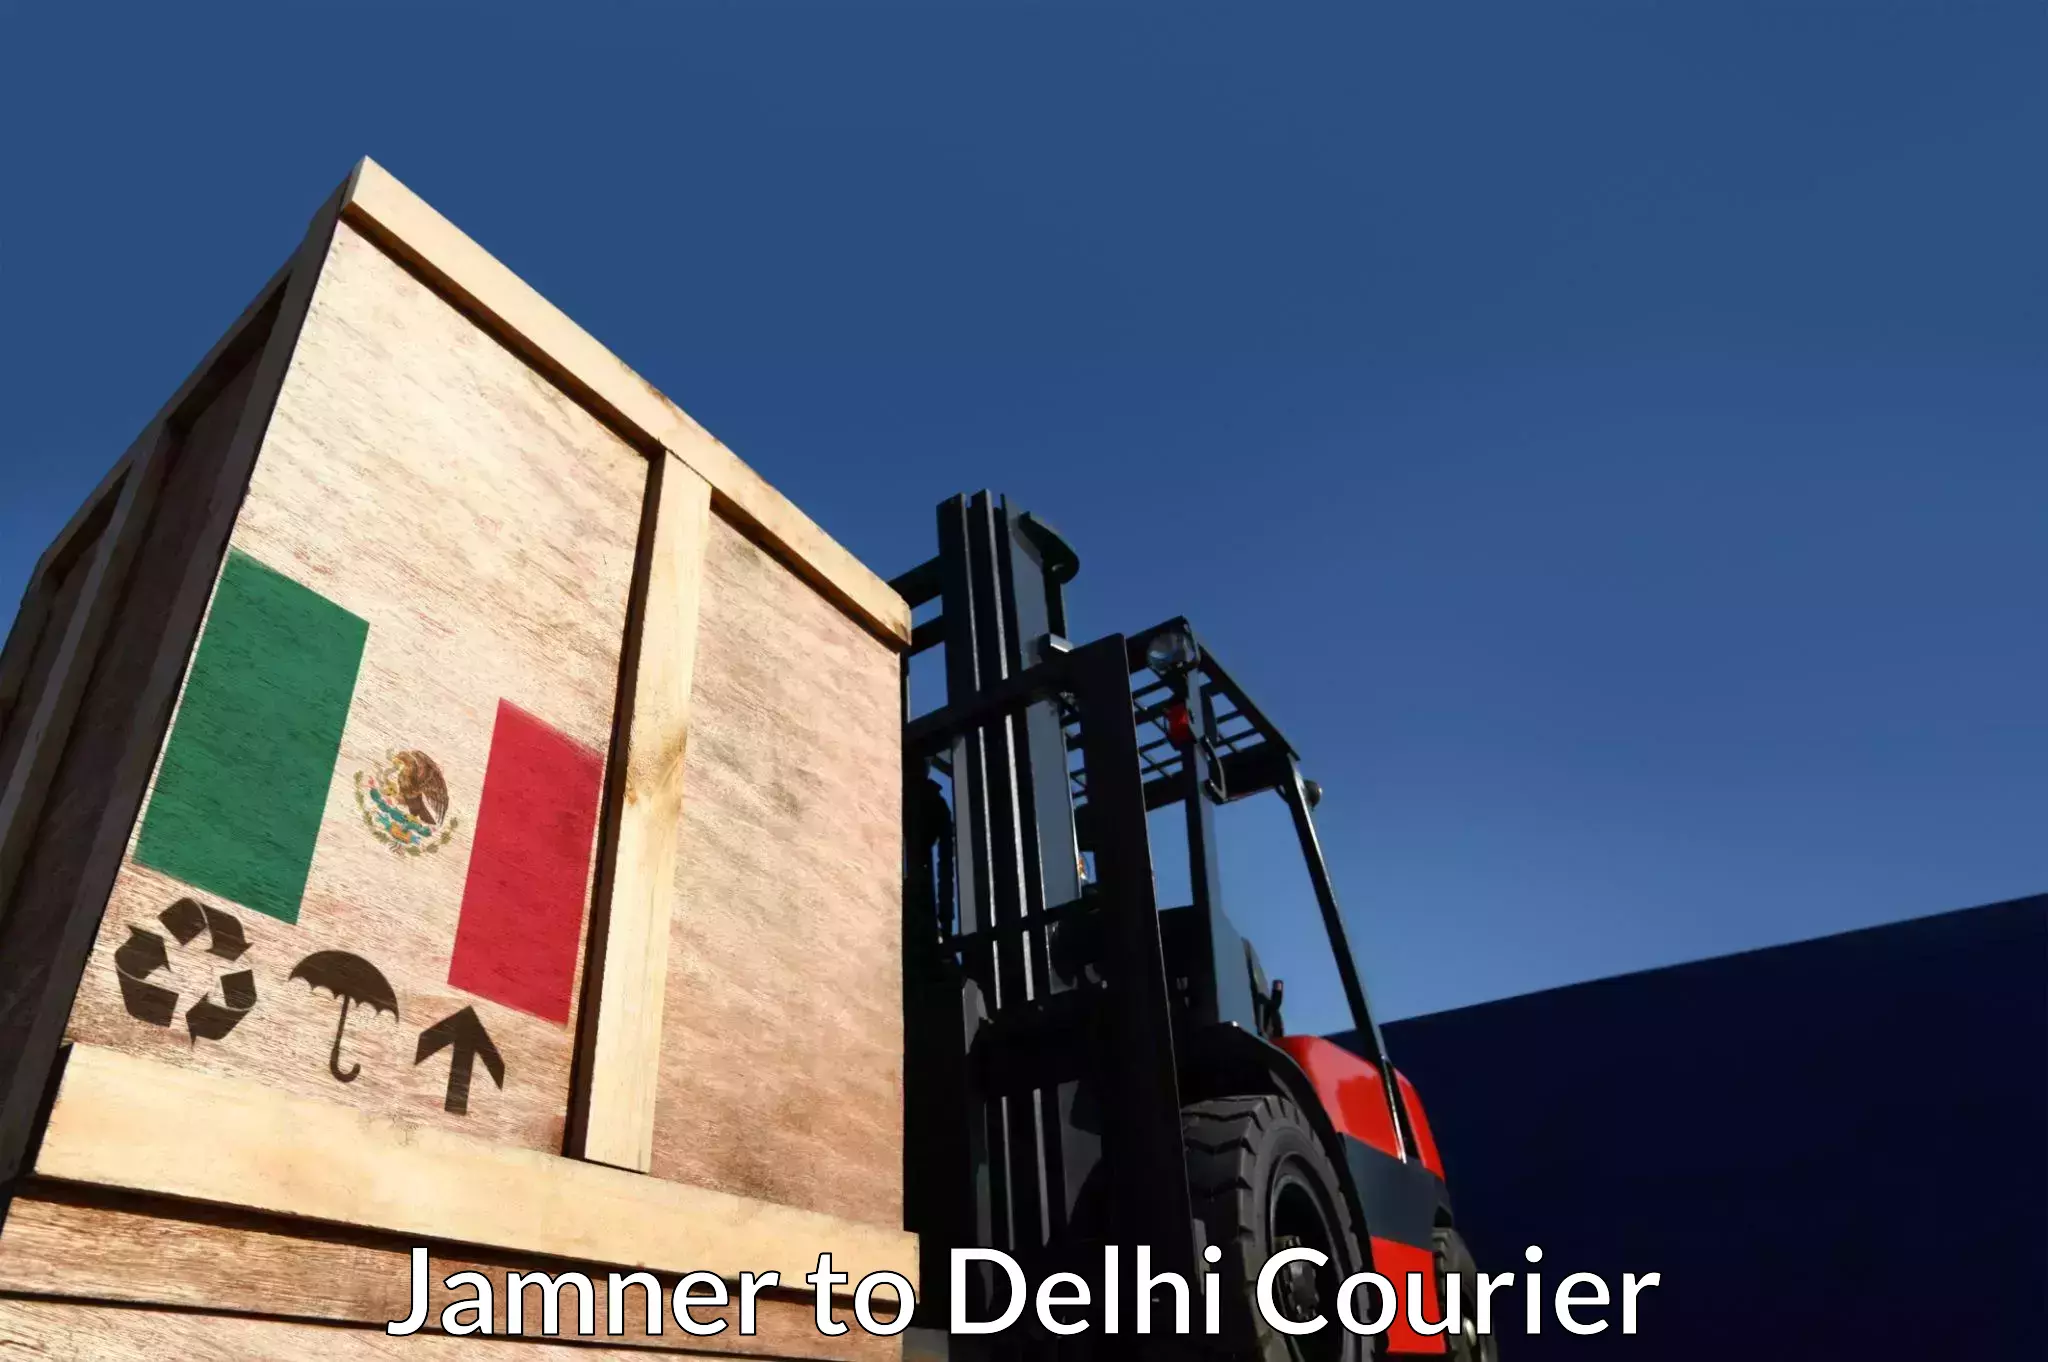 Overnight delivery services in Jamner to Jamia Millia Islamia New Delhi